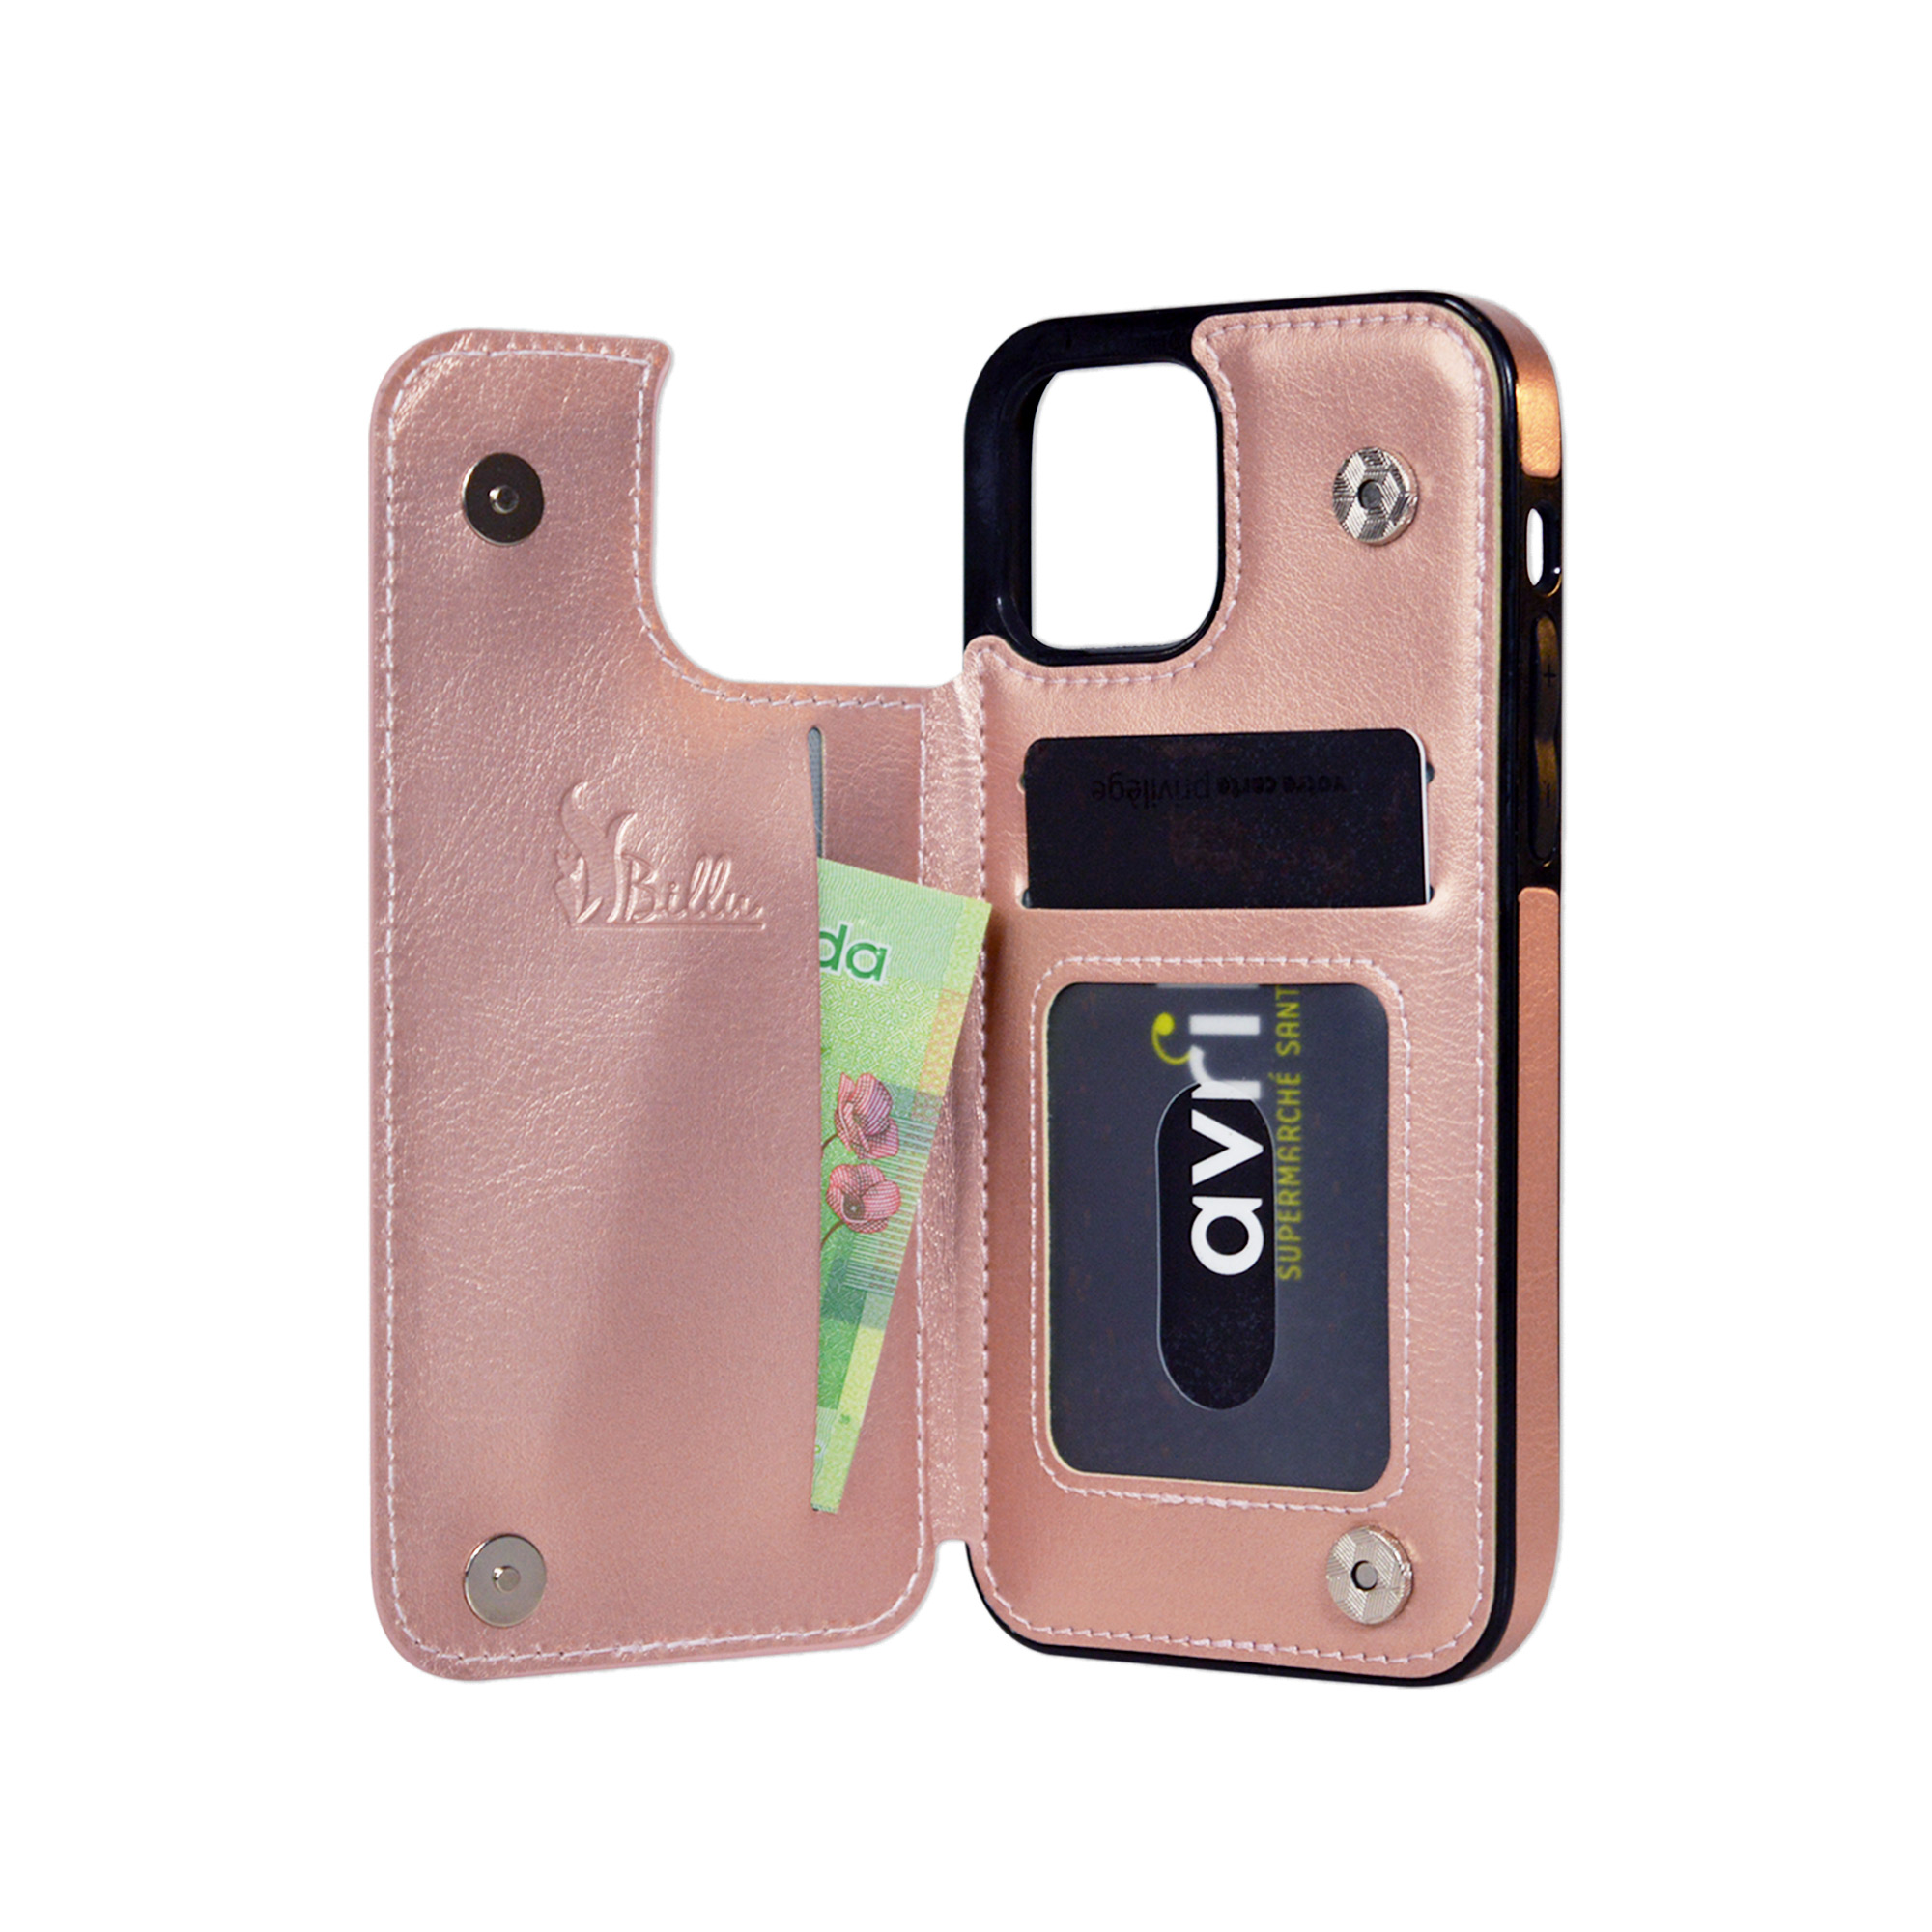 Billu - for iPhone 11 Pro Max (6.5-inch) Wallet Case Faux Leather  Shockproof Kickstand (Pink Rose Gold) - Billu